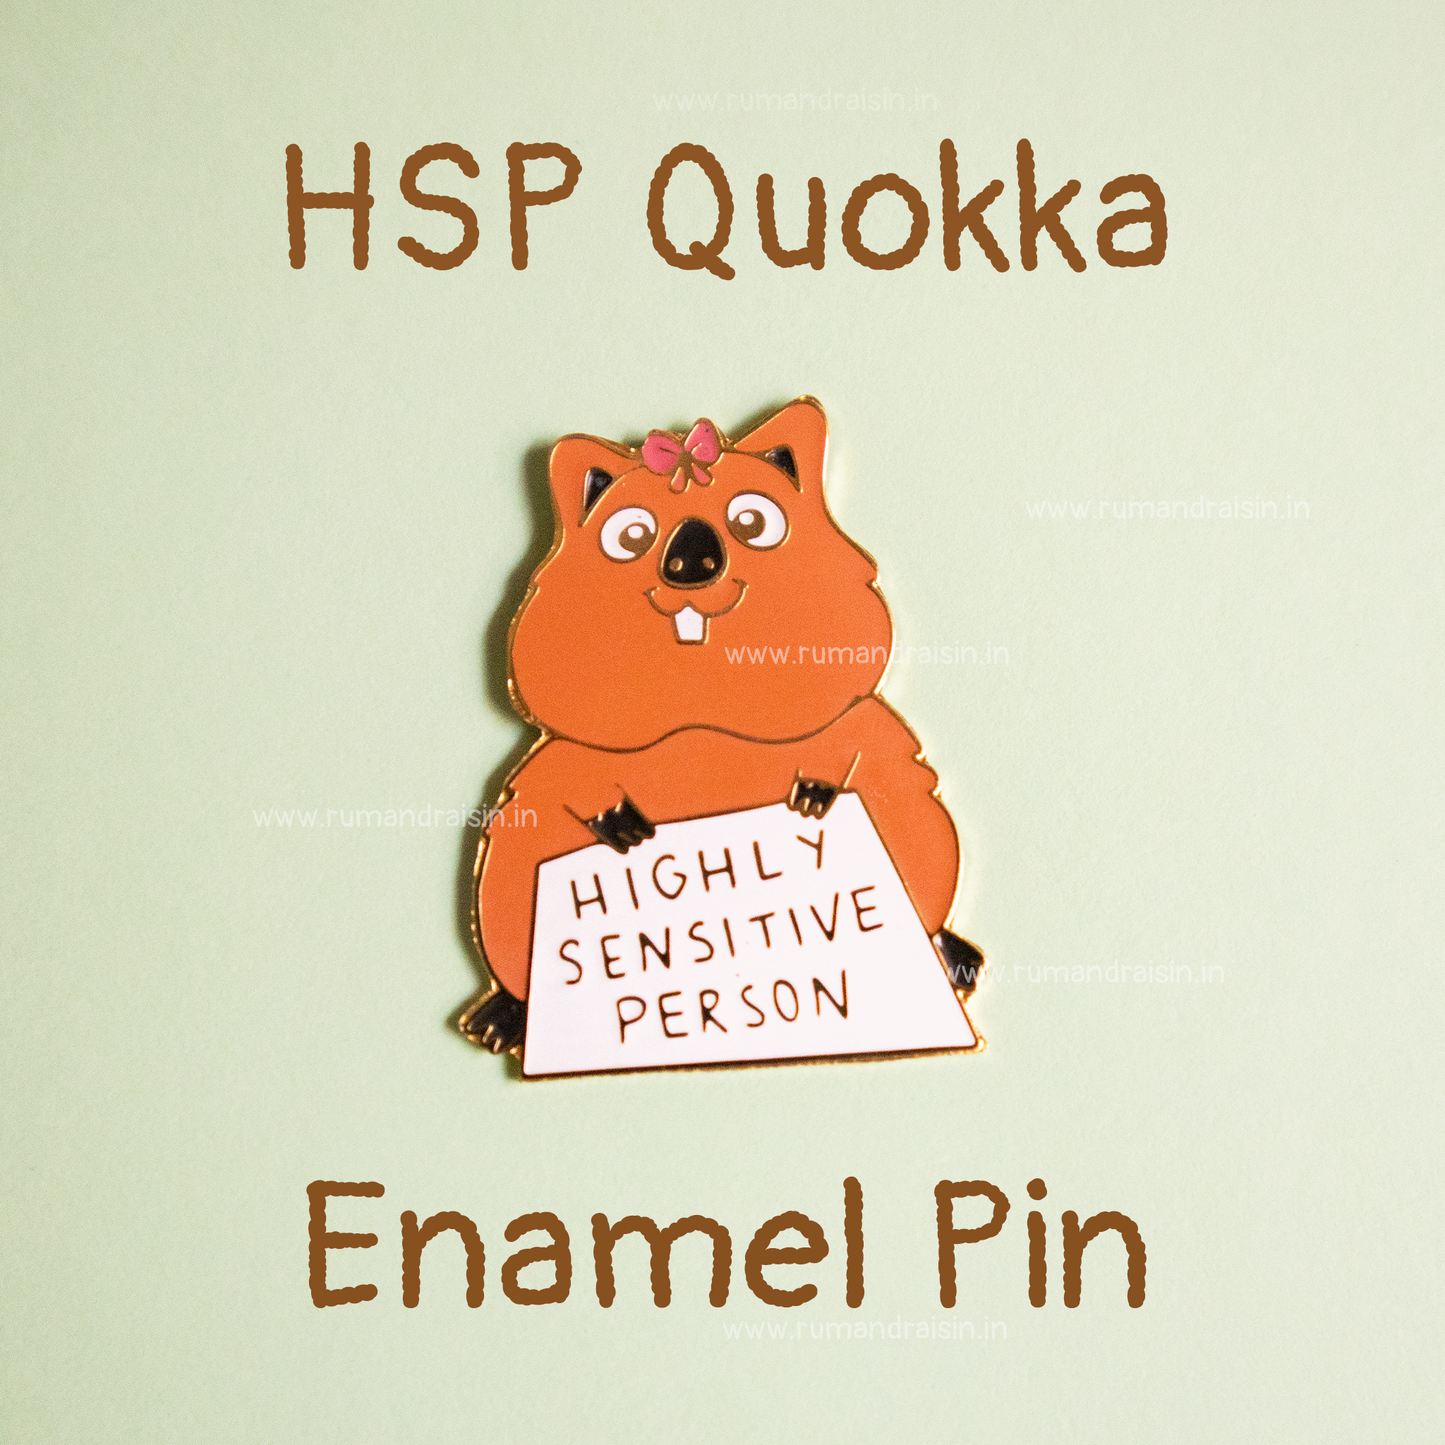 HSP Quokka: Enamel Pin